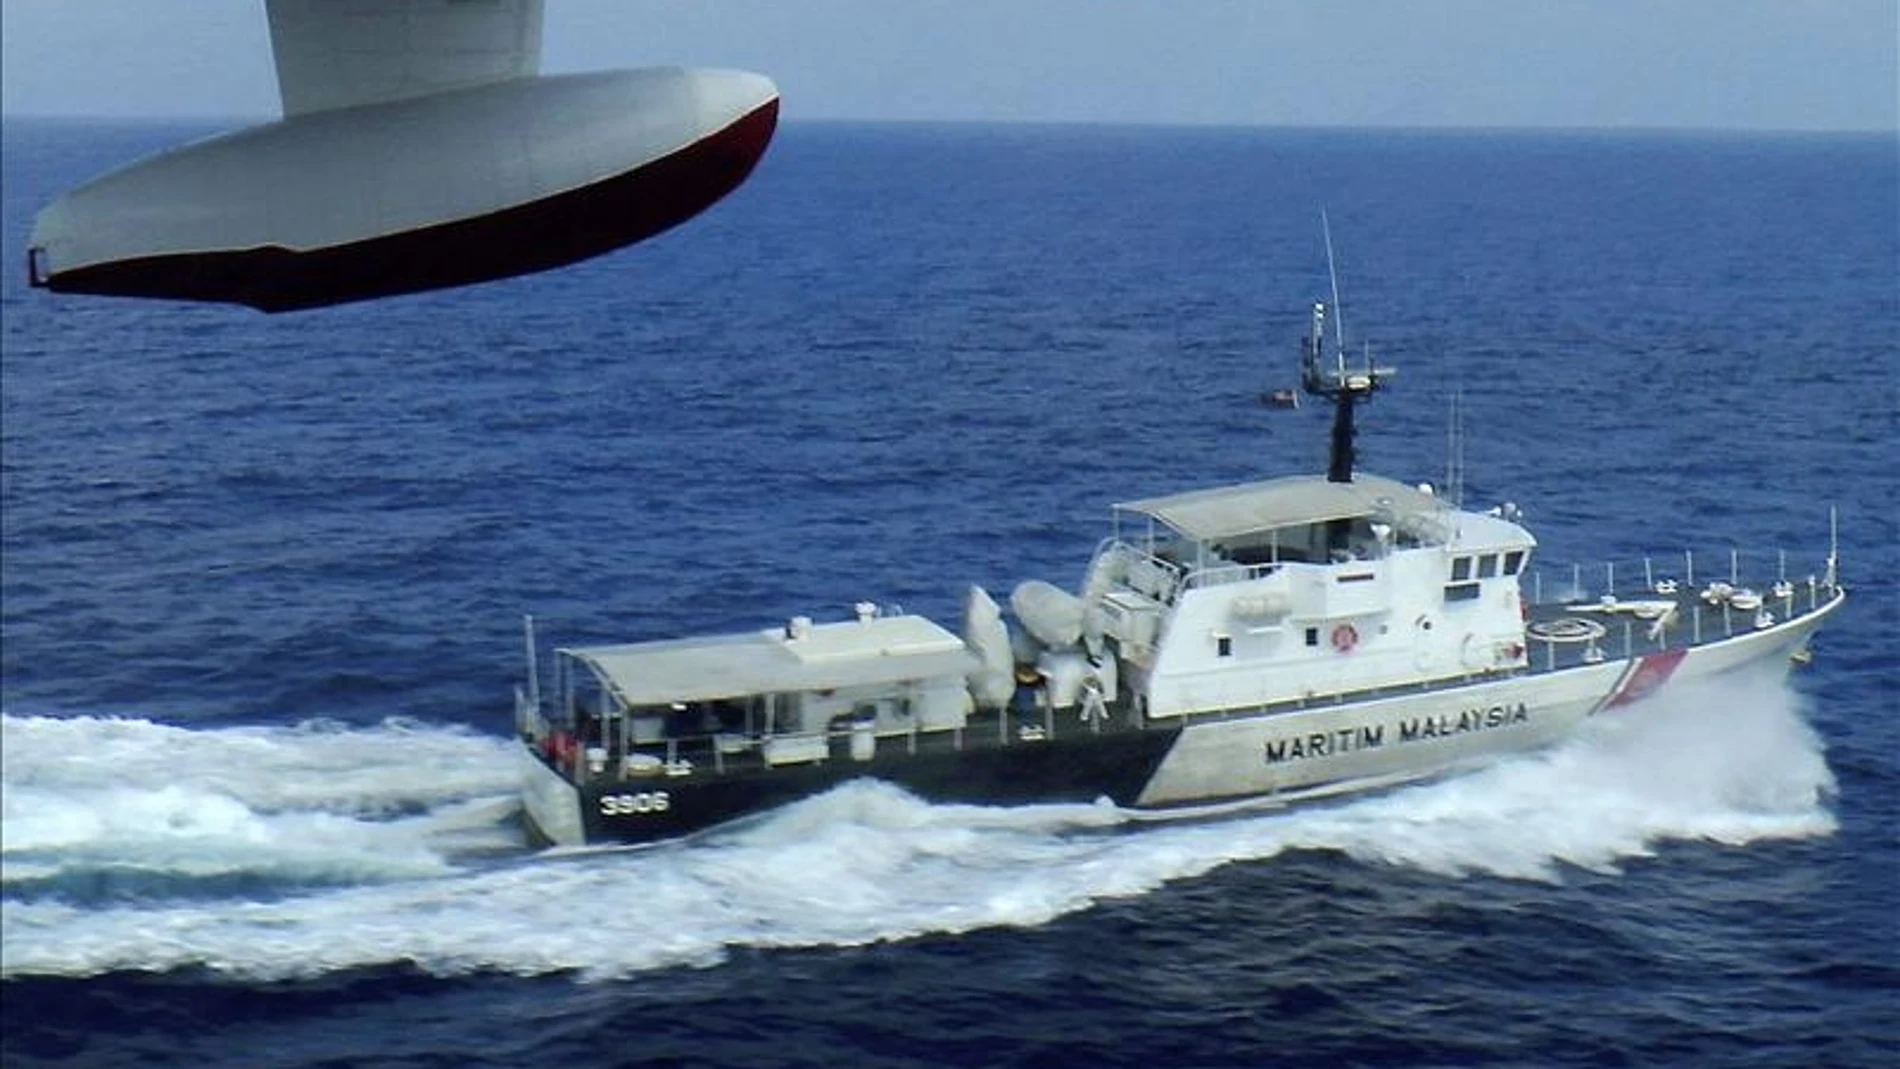 Barco de la guardia costera malasia durante las operaciones de búsqueda y rescate del vuelo de Malasia Aerolíneas desaparecido